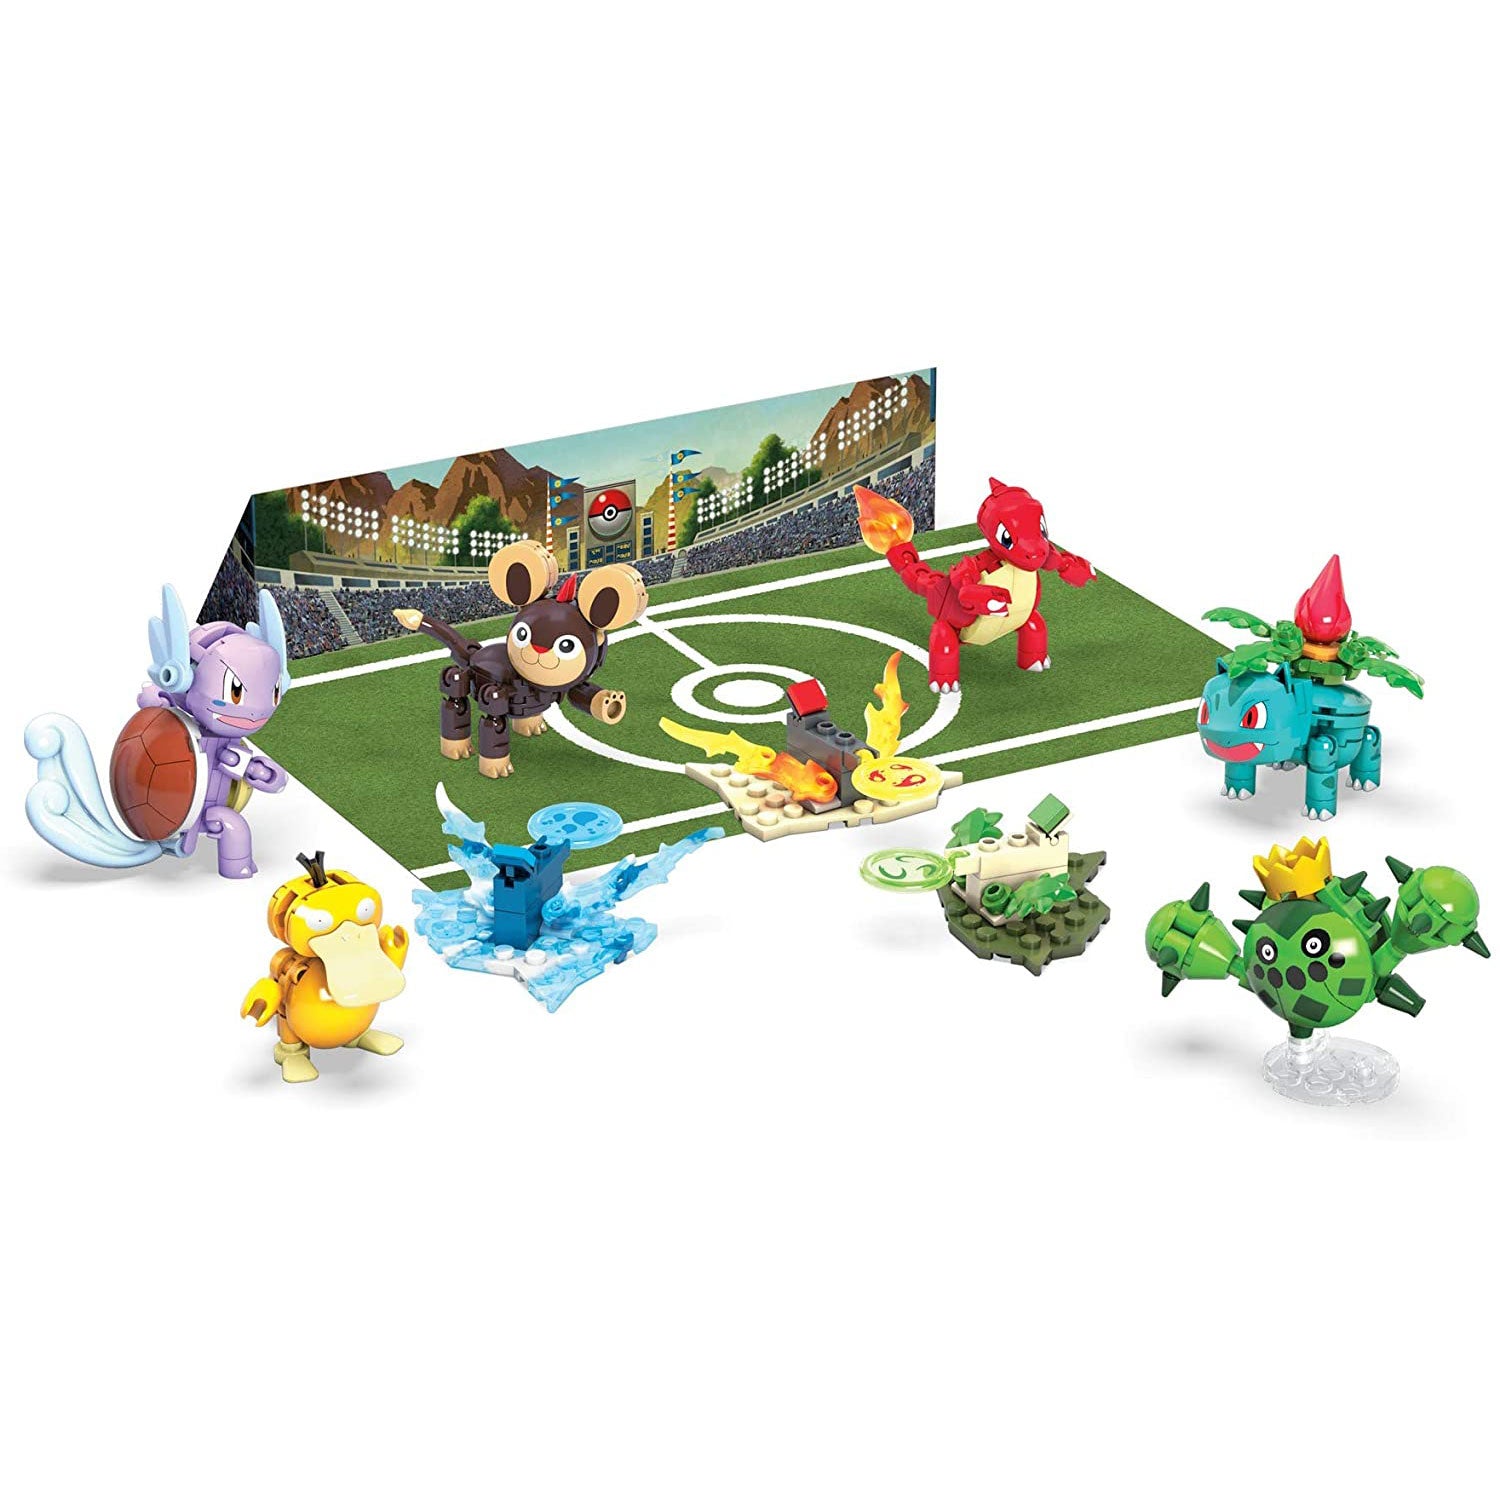 Trainer Team Challenge - Mega Construx Pokémon Set